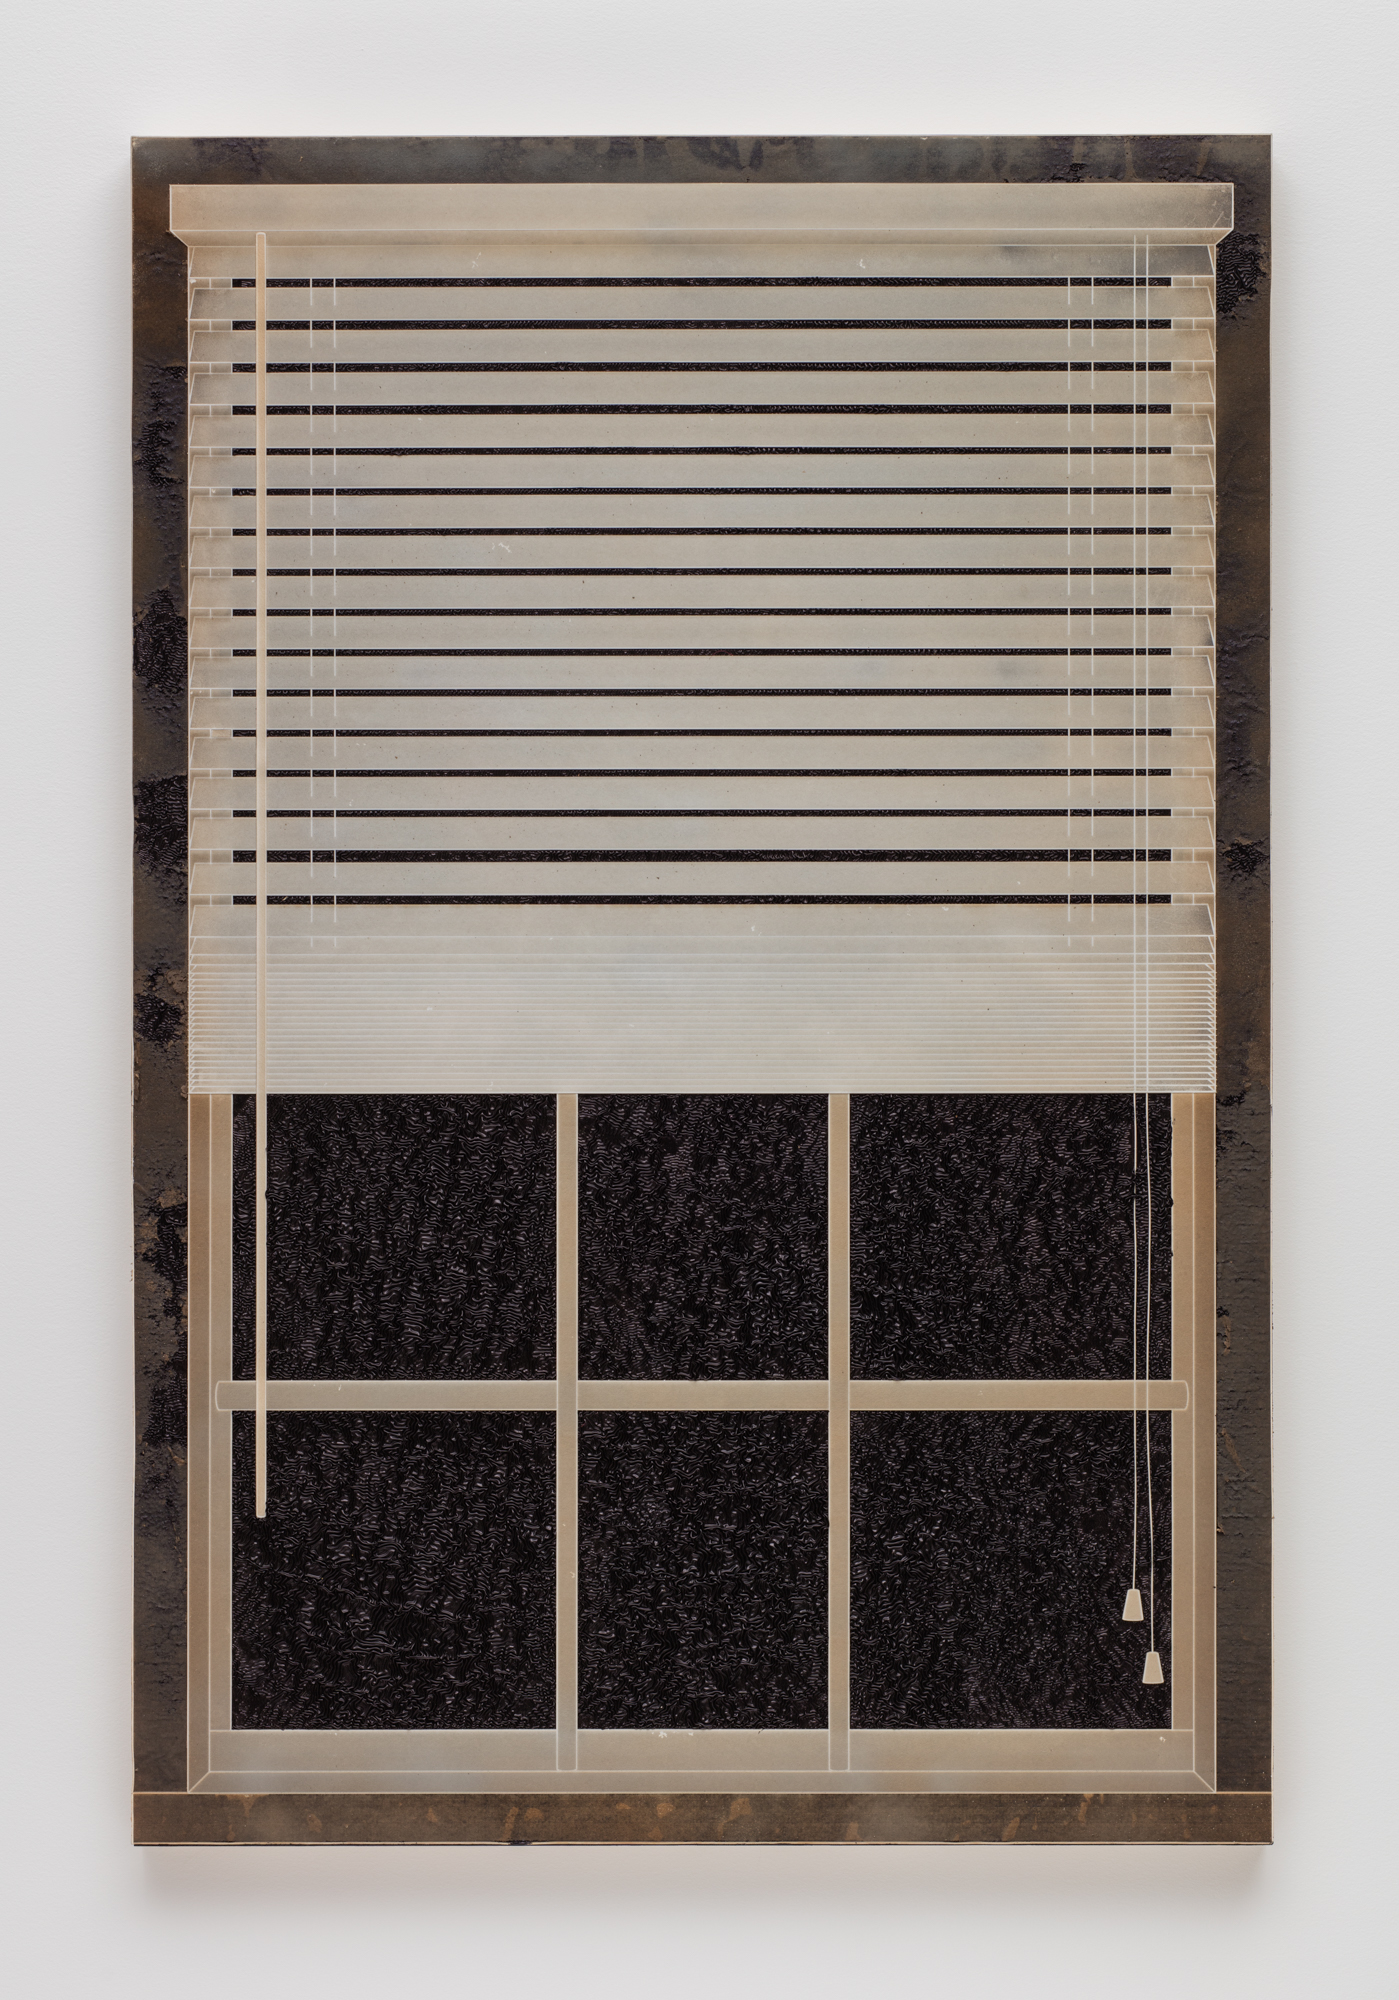 Analia Saban、プリーツインク、ブラインド付きウィンドウ、2017年。木製パネルのインクにレーザー彫刻された紙。 152.4 x 101.6 x5.2cm。ブライアンフォレストによる写真。